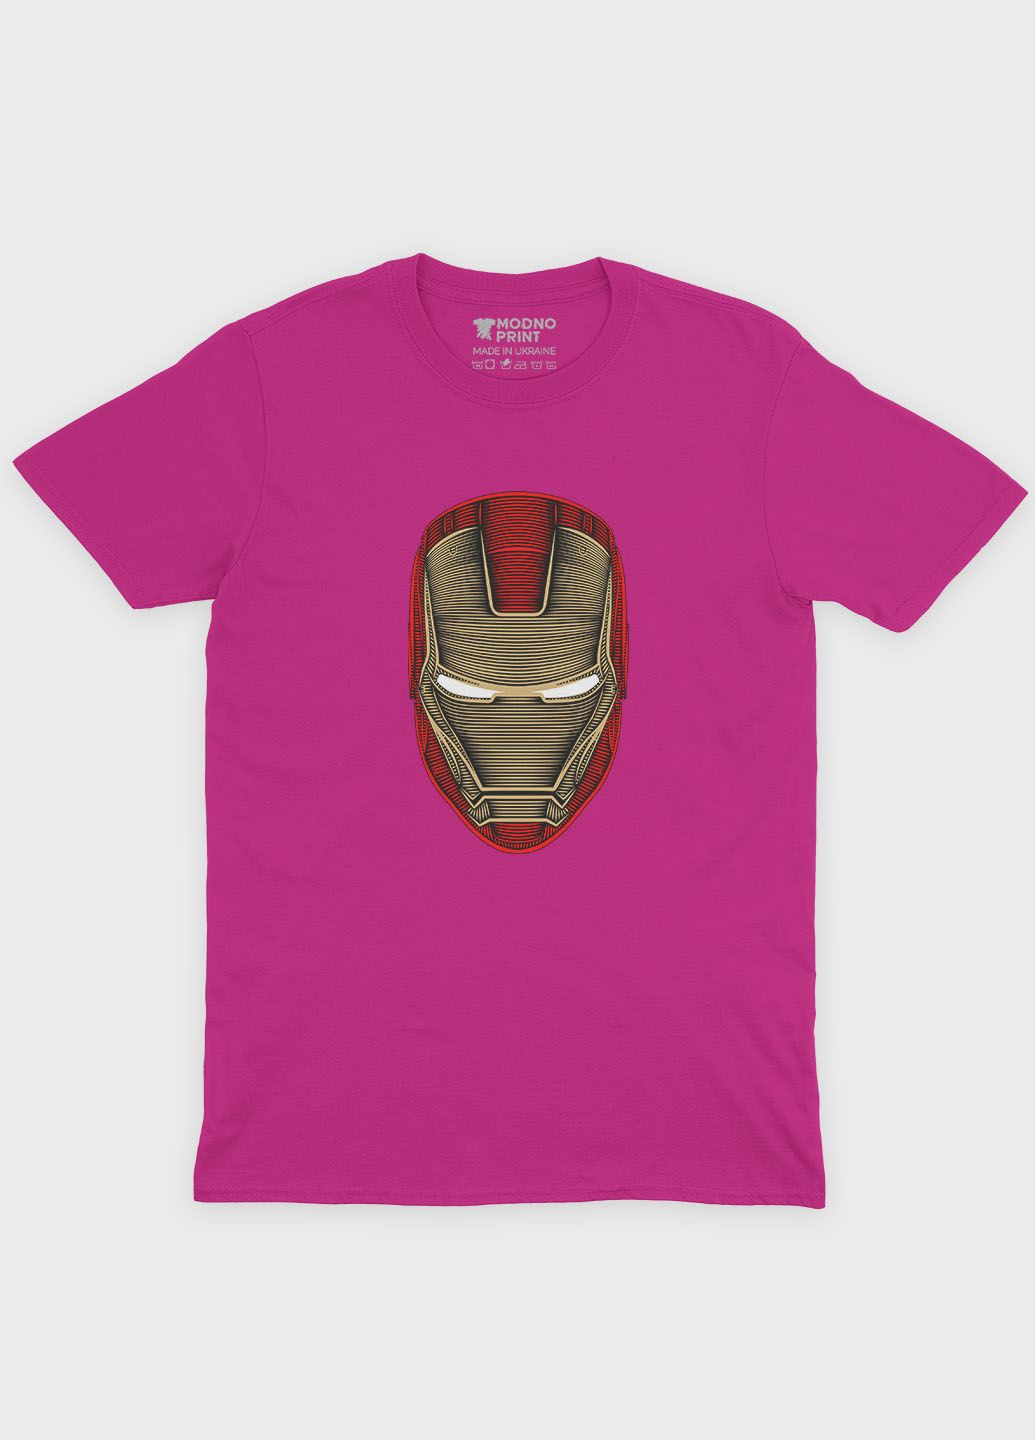 Розовая демисезонная футболка для мальчика с принтом супергероя - железный человек (ts001-1-fuxj-006-016-017-b) Modno